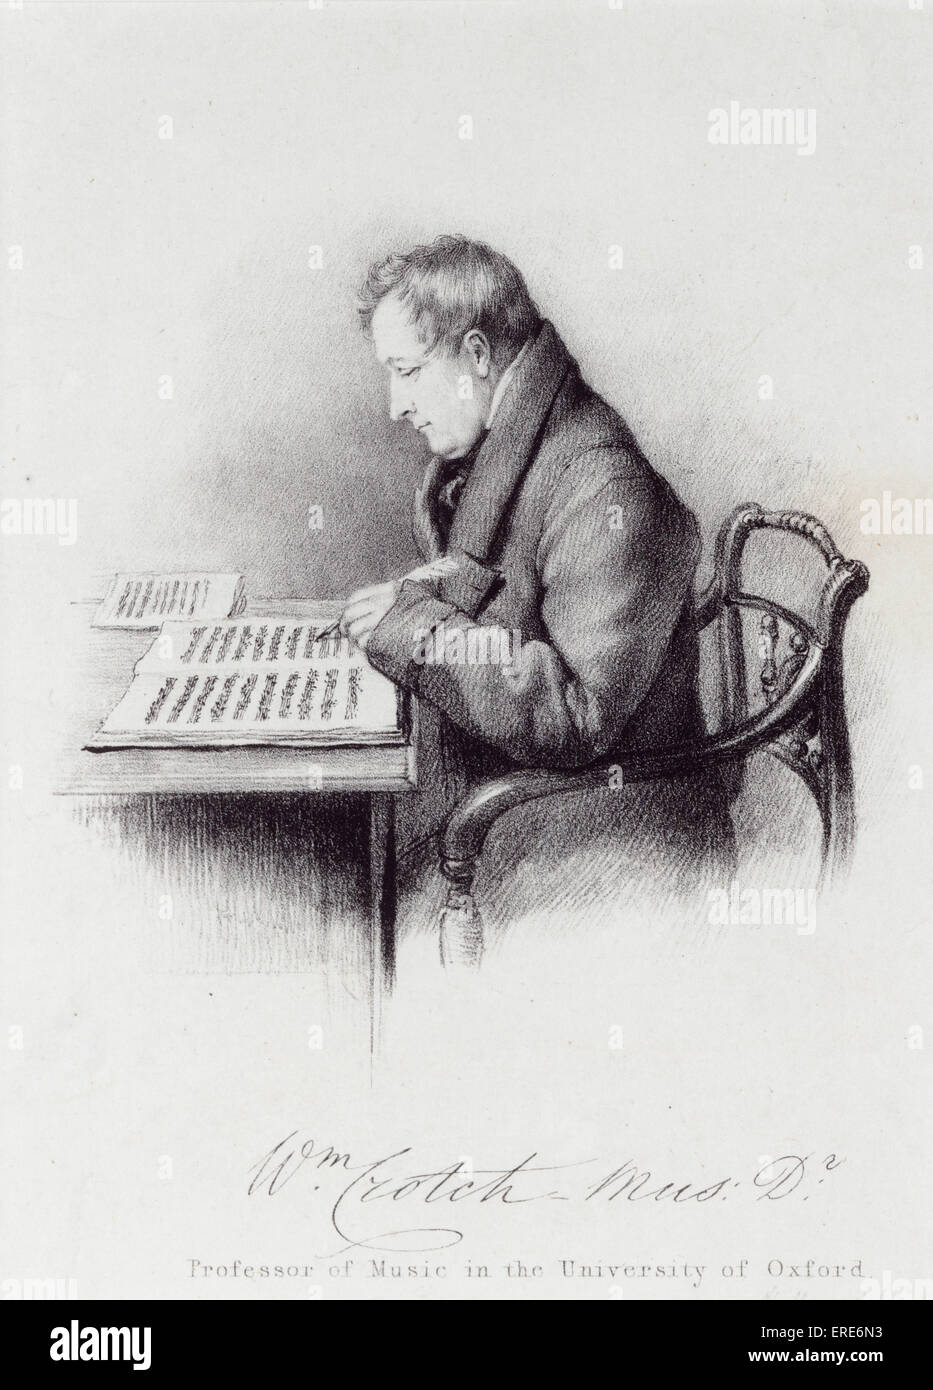 Guglielmo Cavallo D Mus, professore di musica dell'Università di Oxford, seduto nella sedia la composizione. Incisione. Compositore inglese, Foto Stock